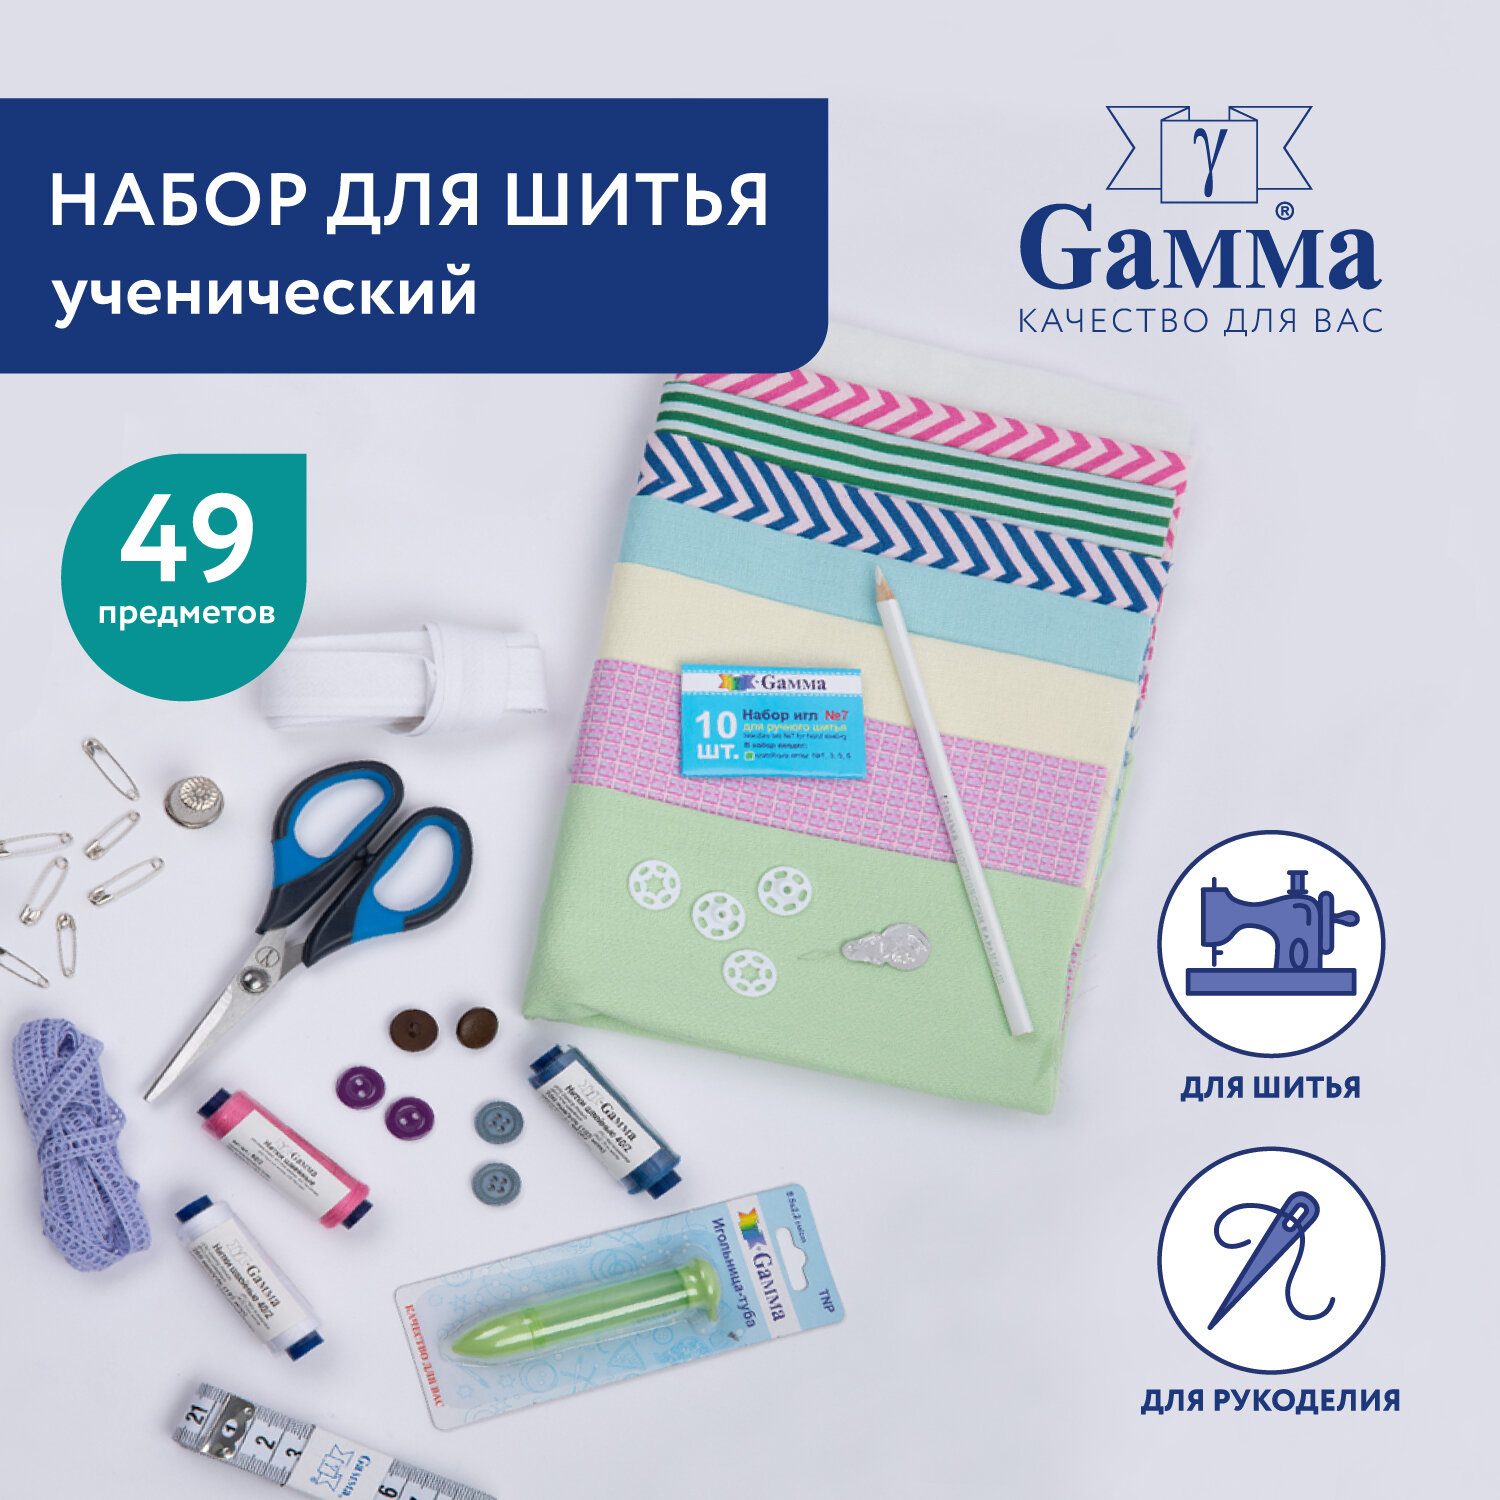 Набор для шитья "Gamma" NS-49 "Ученический" (49 предметов)